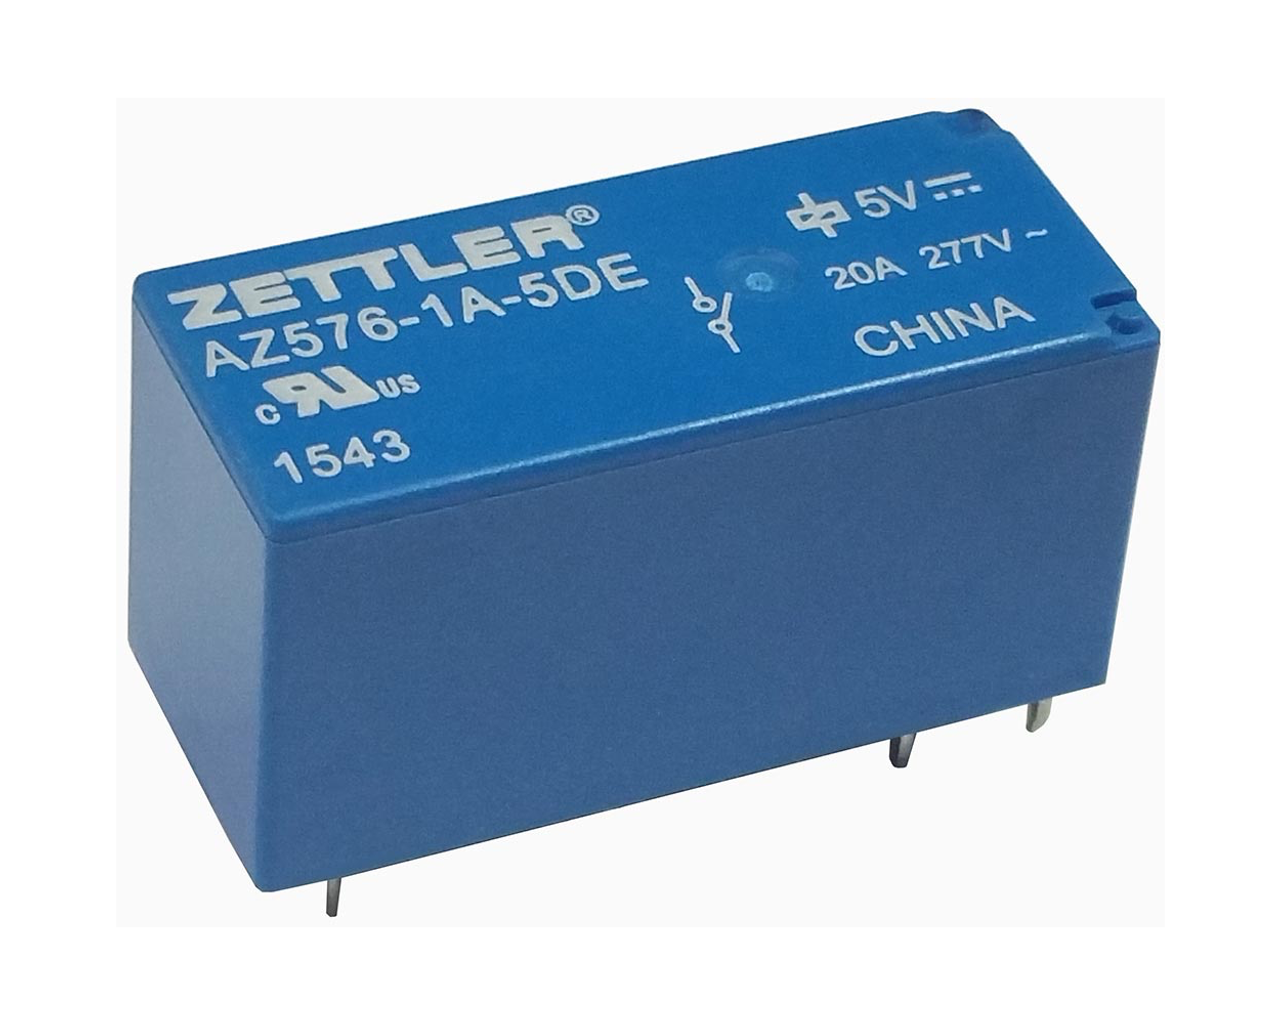 American Zettler AZ576-1C-5D Power Relay